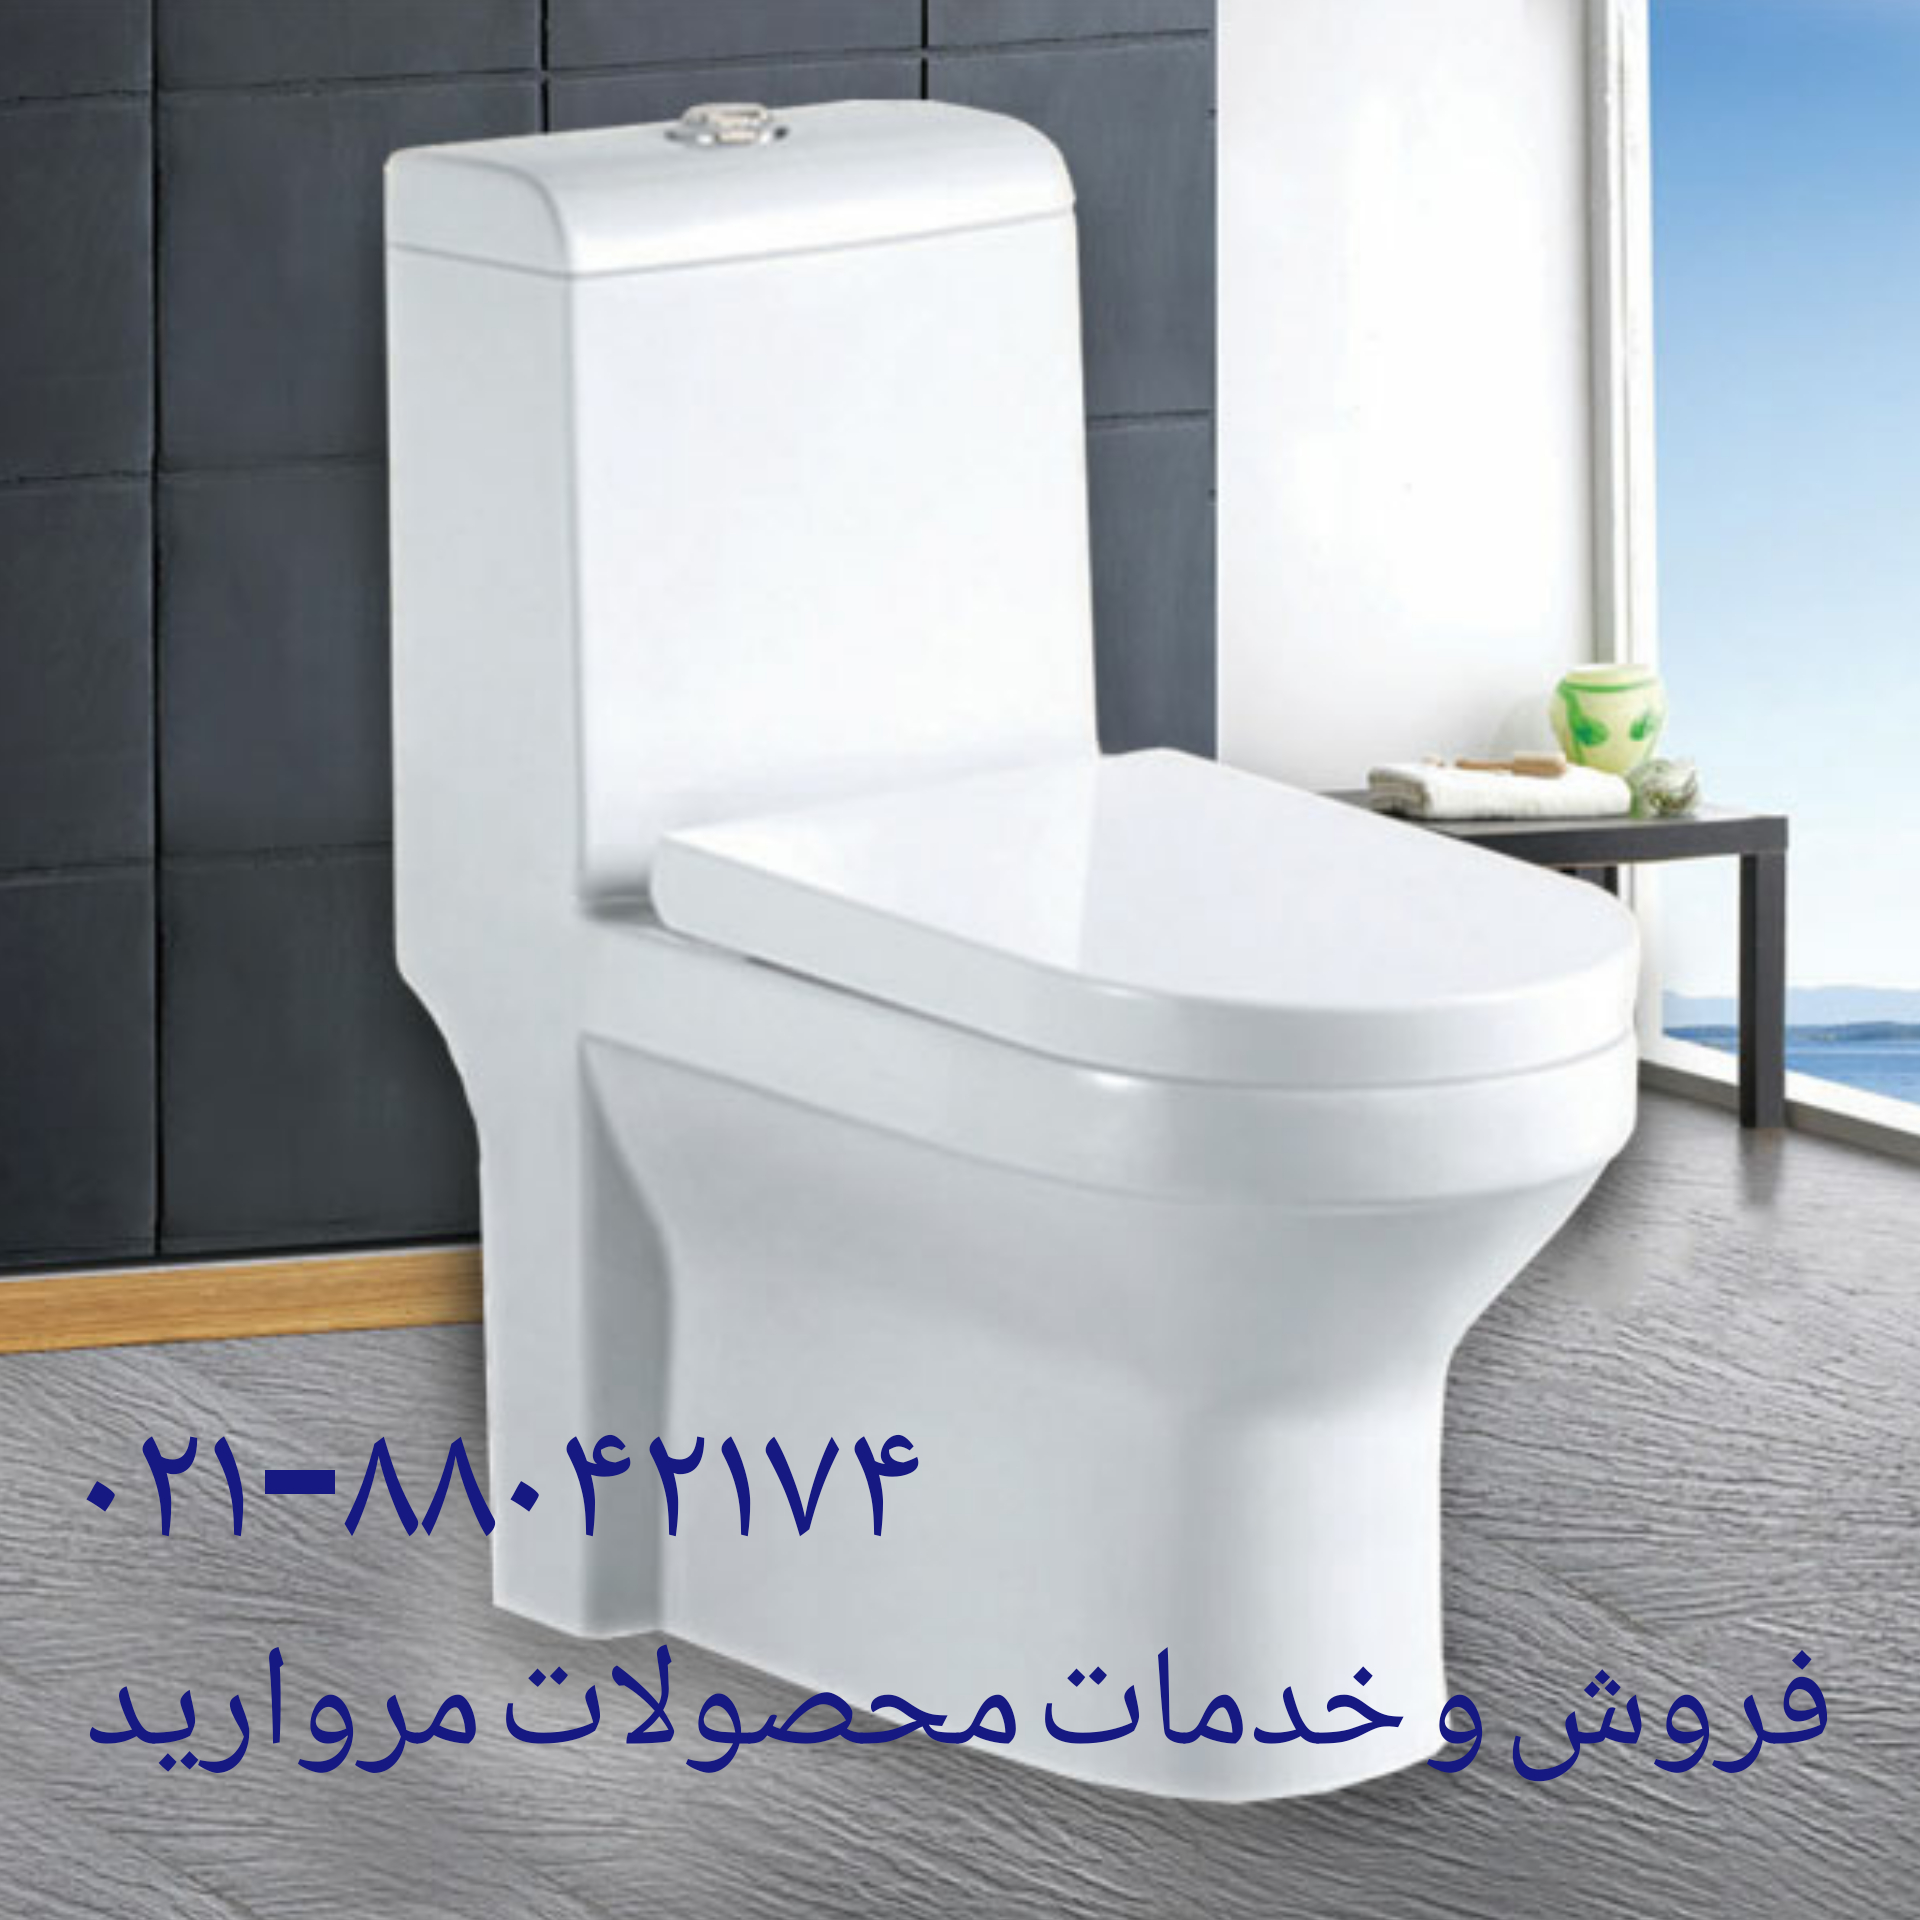 فروش و خدمات محصولات مروارید ۸۸۰۴۲۱۷۴_تعمیر توالت فرنگی مروارید